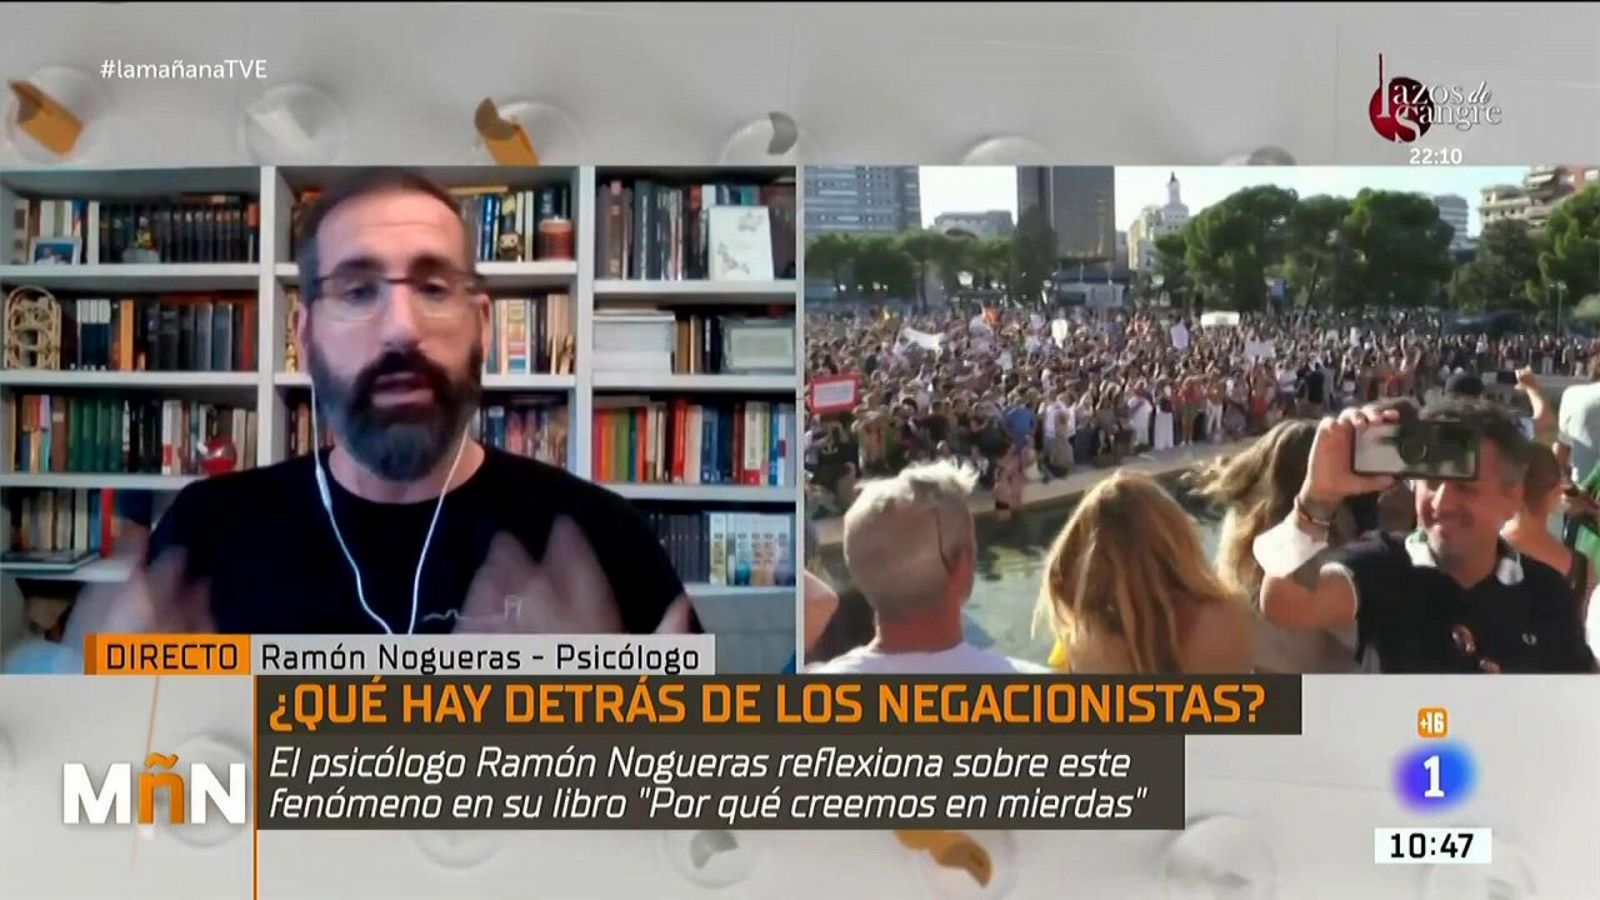 La Mañana - El psicólogo Ramón Nogueras: "Nunca conseguirás que un negacionista cambie de opinión"